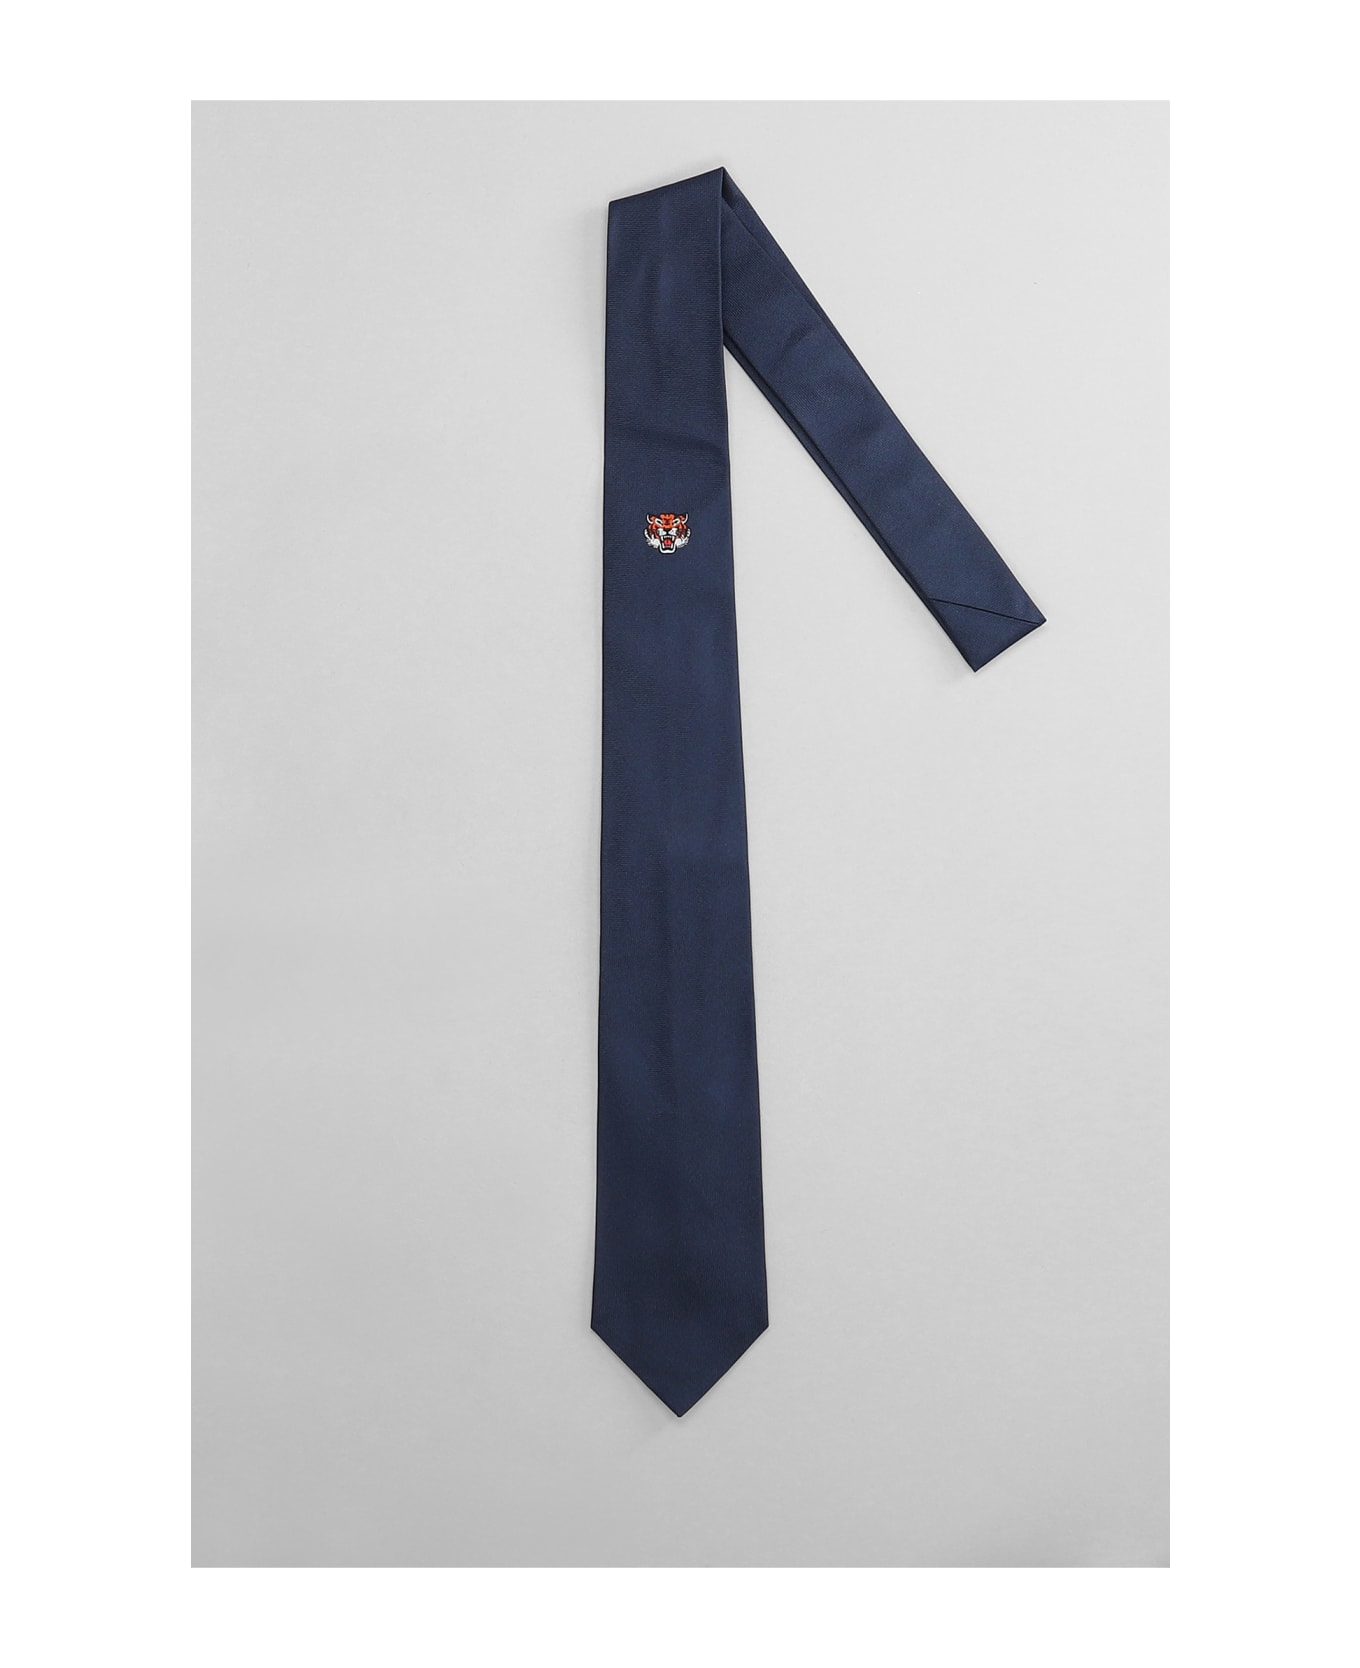 Kenzo Tie In Blue Silk - blue ネクタイ